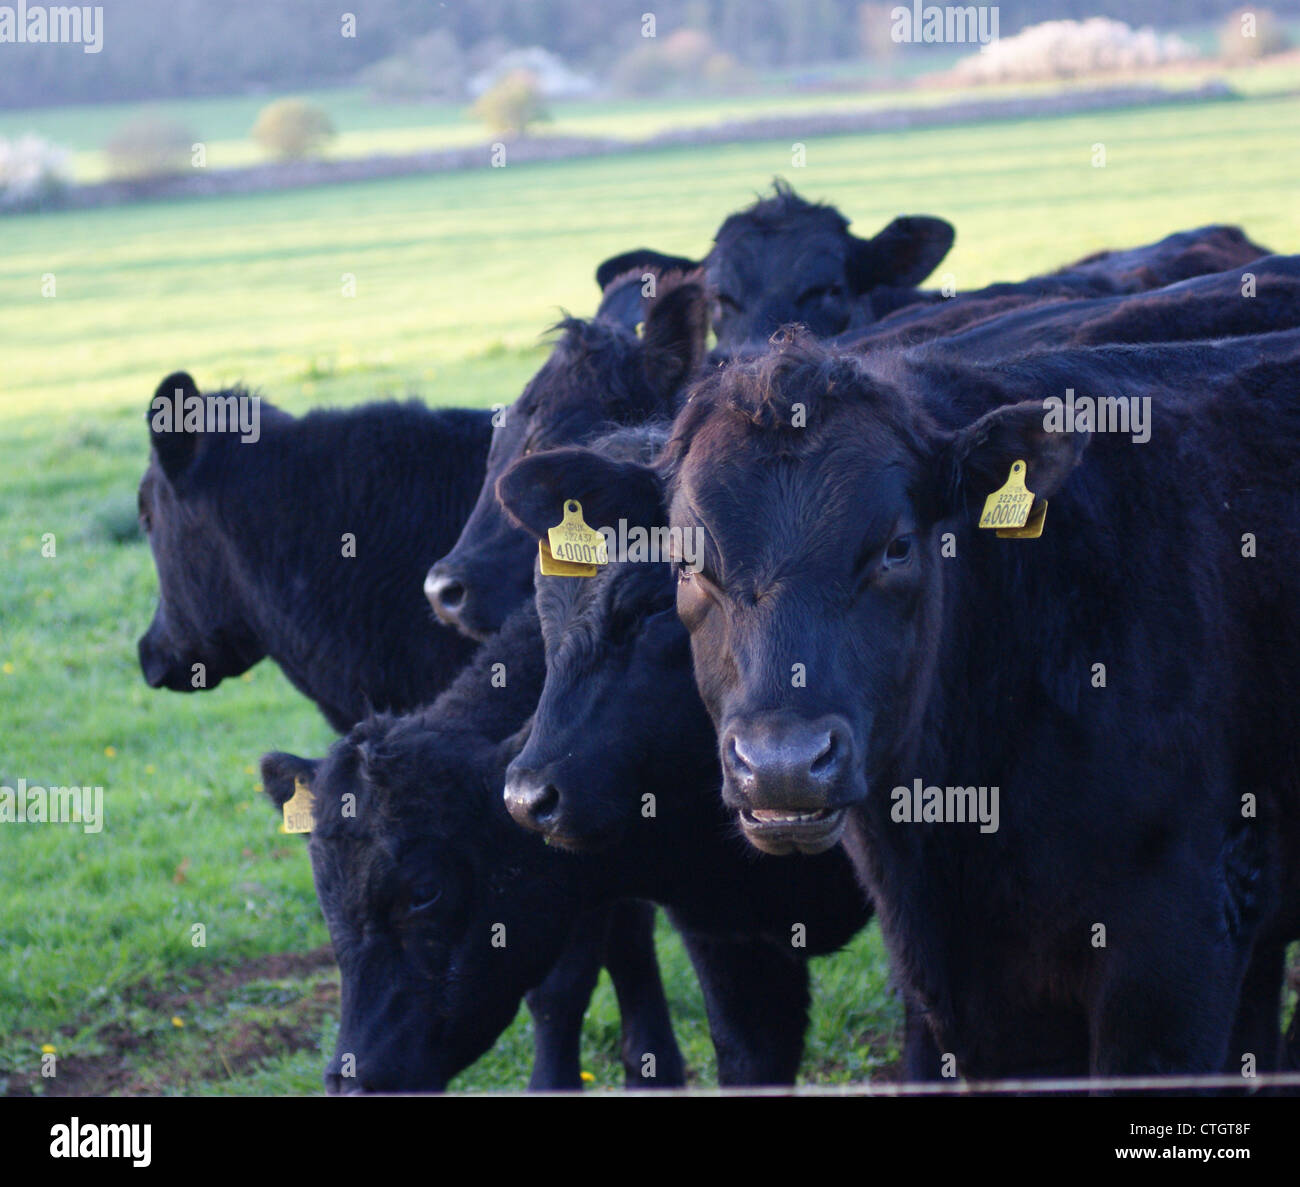 Un groupe de taureaux dans leur domaine. Photographie prise à Haugh, Bradford on Avon, Wiltshire, Royaume-Uni Banque D'Images